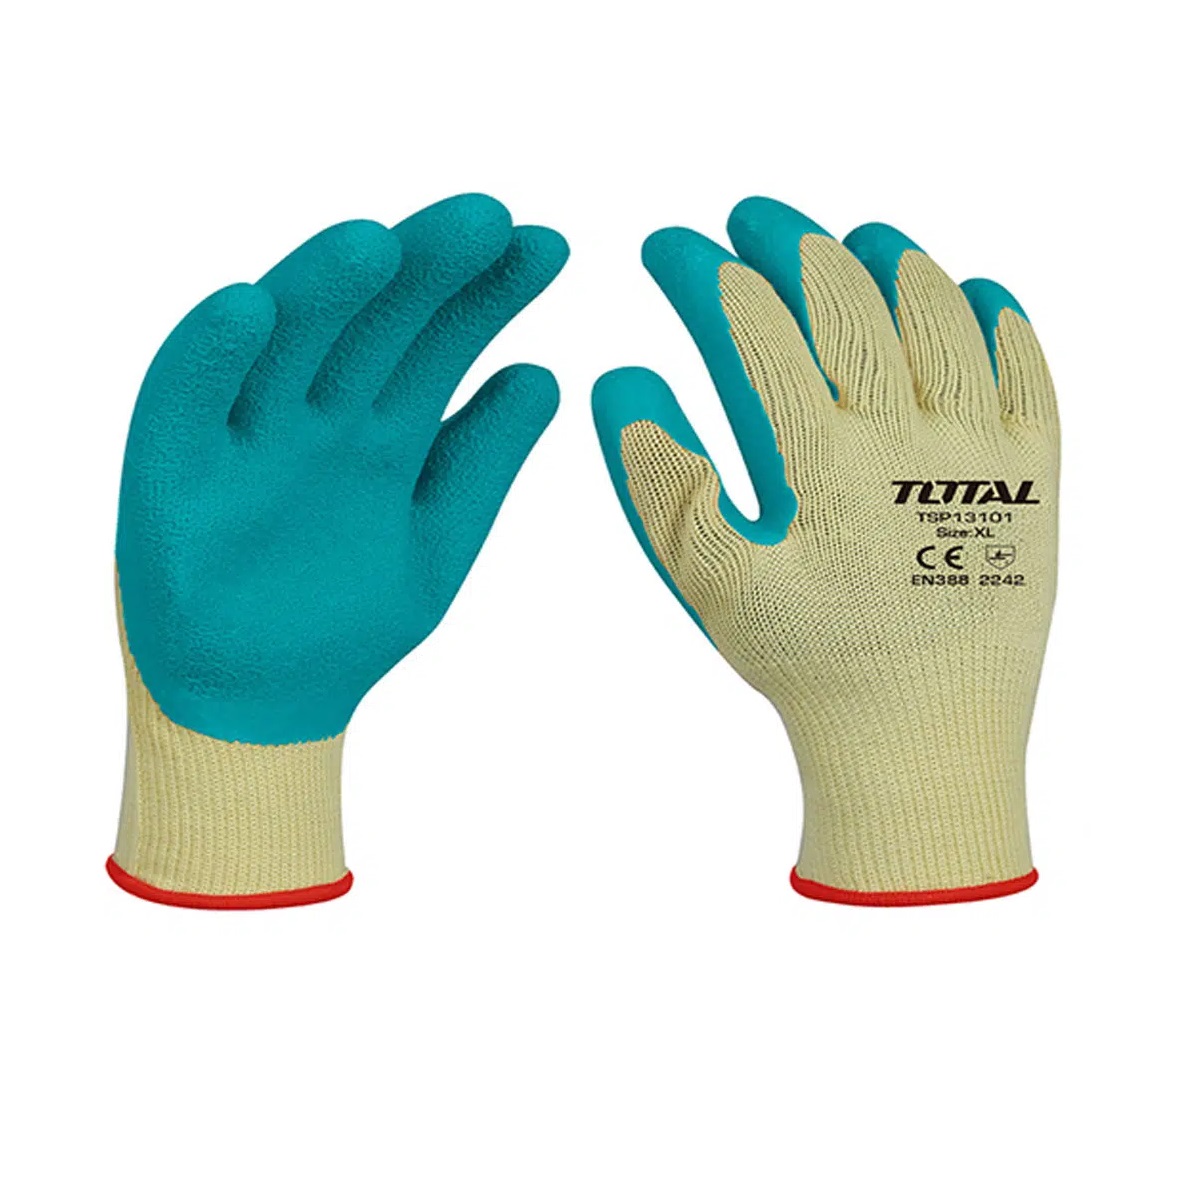 Găng tay cao su đa dụng TOTAL TSP13101 - size XL người lớn, không gây dị ứng, kích thích da, đeo thoải mái, bảo vệ da tay